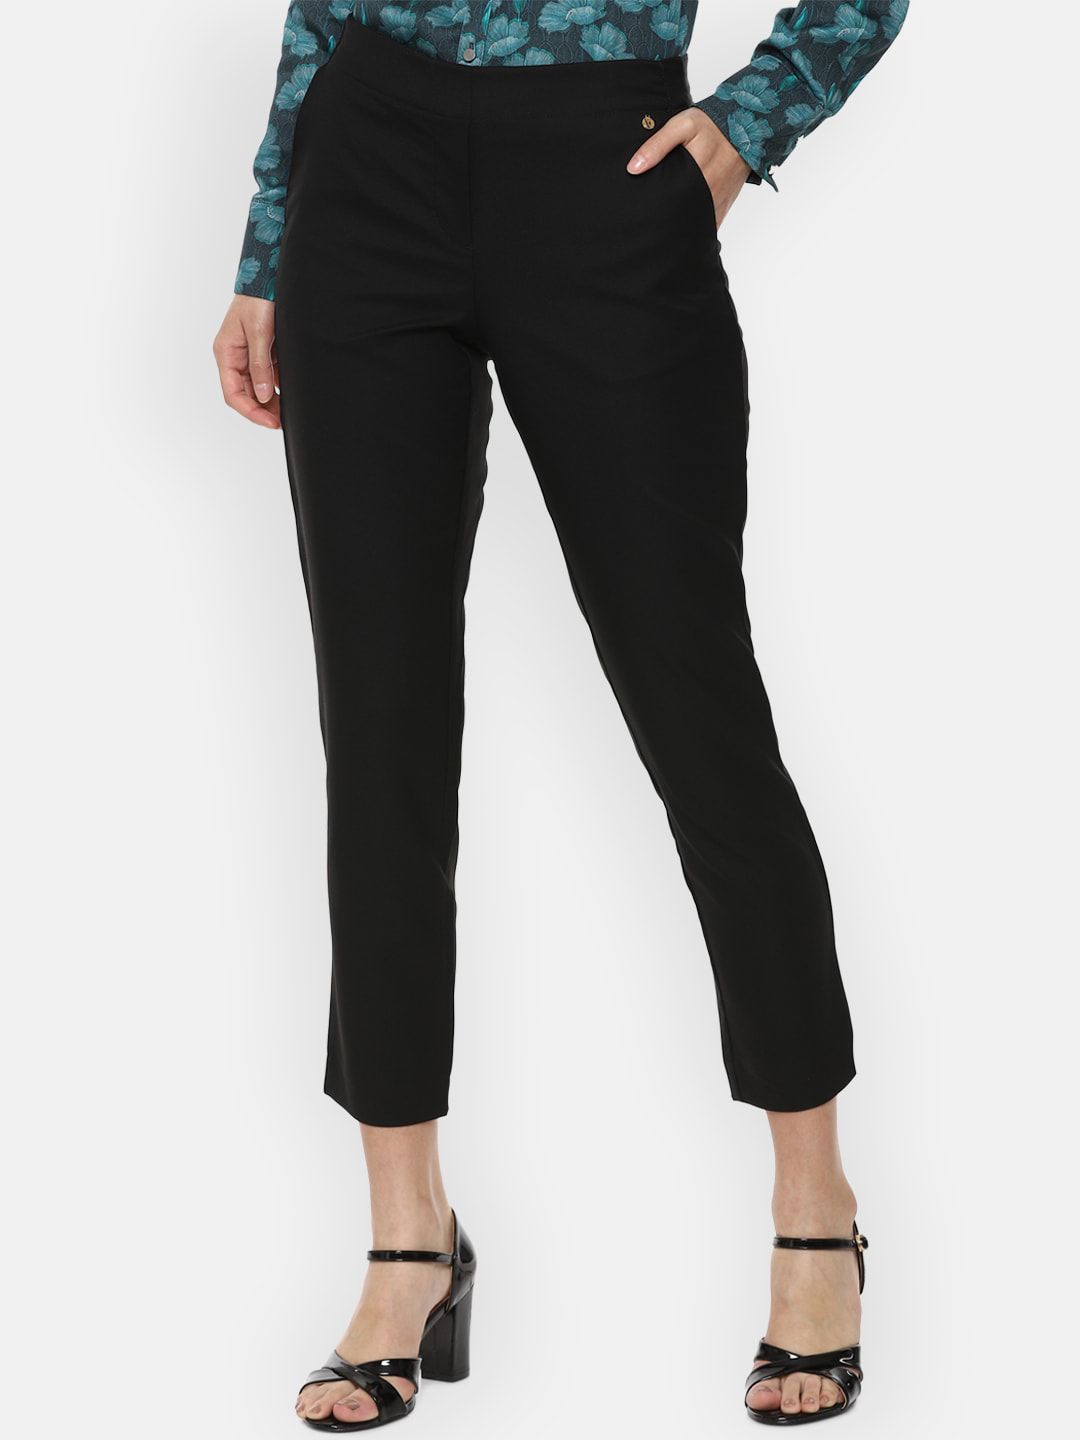 Van Heusen Woman Black Formal Trousers Price in India